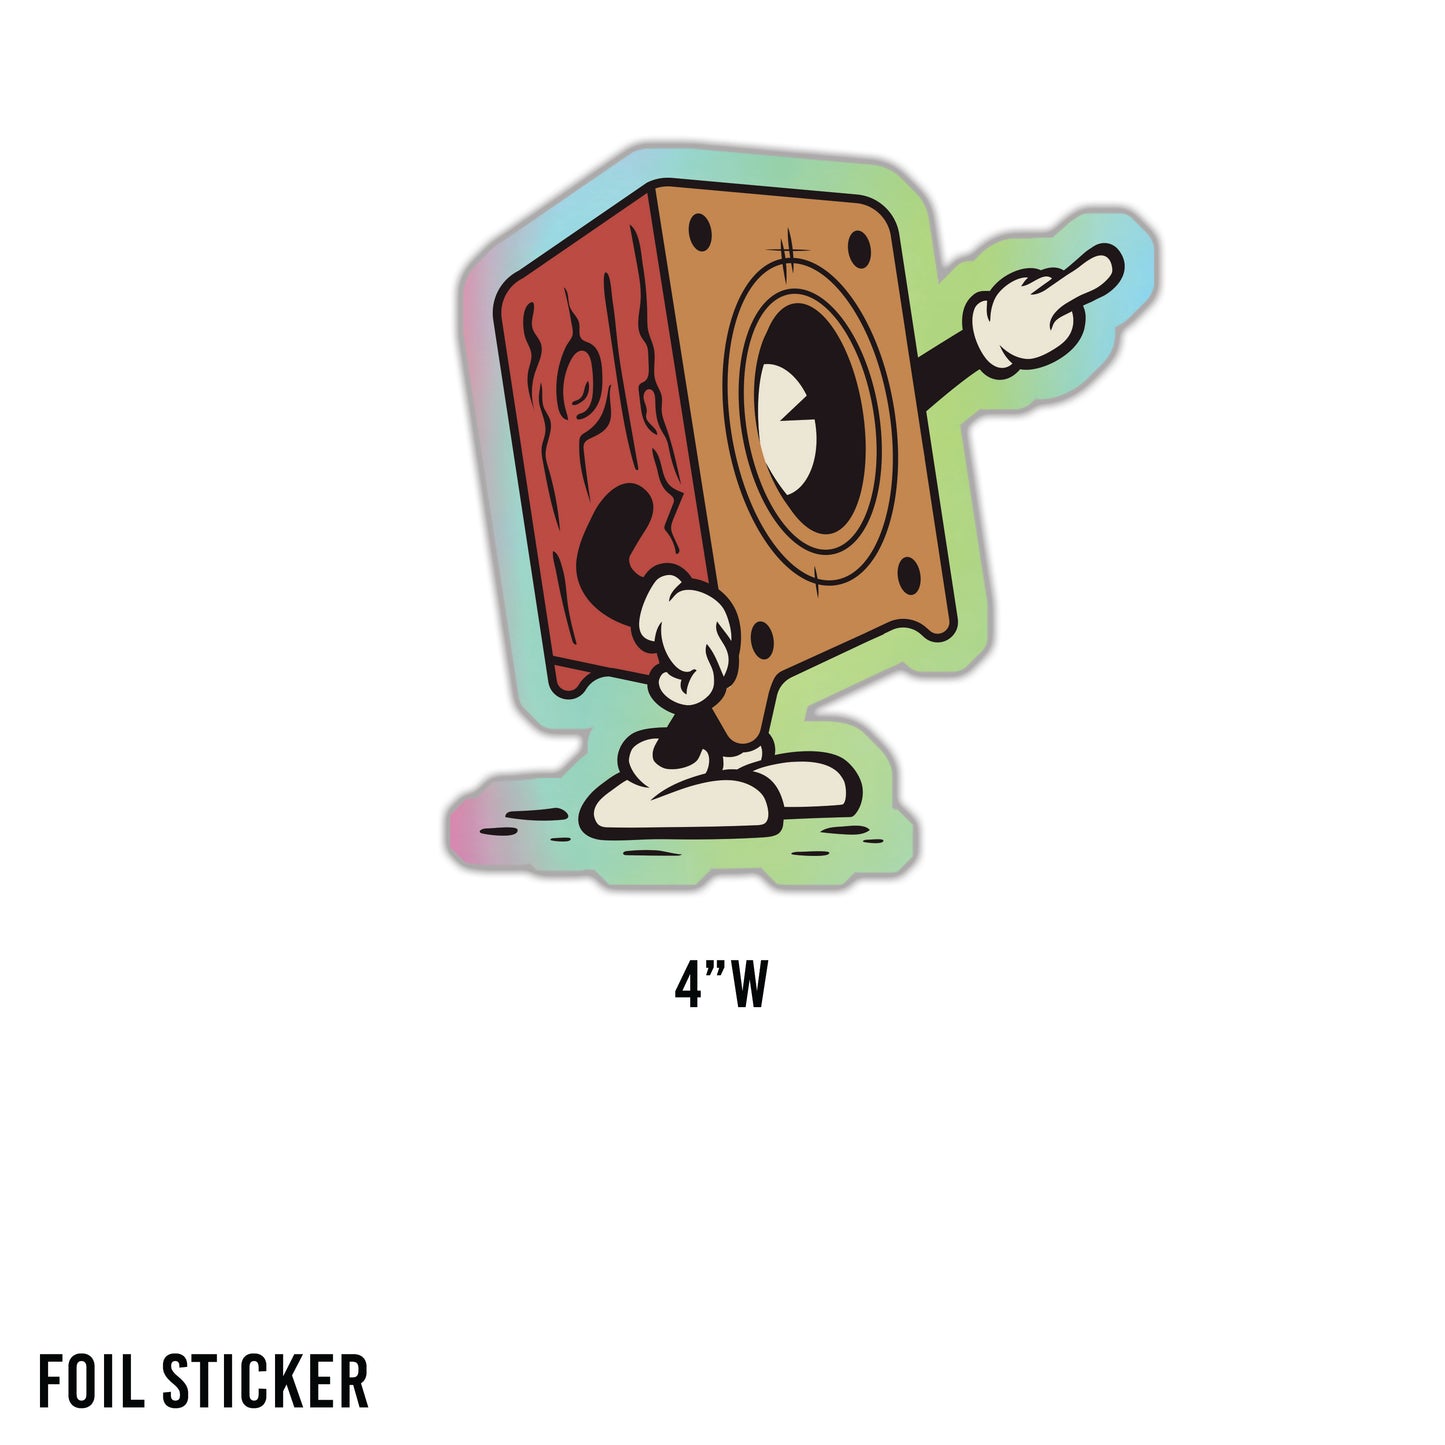 V1 Foil Sticker - Speakerhead